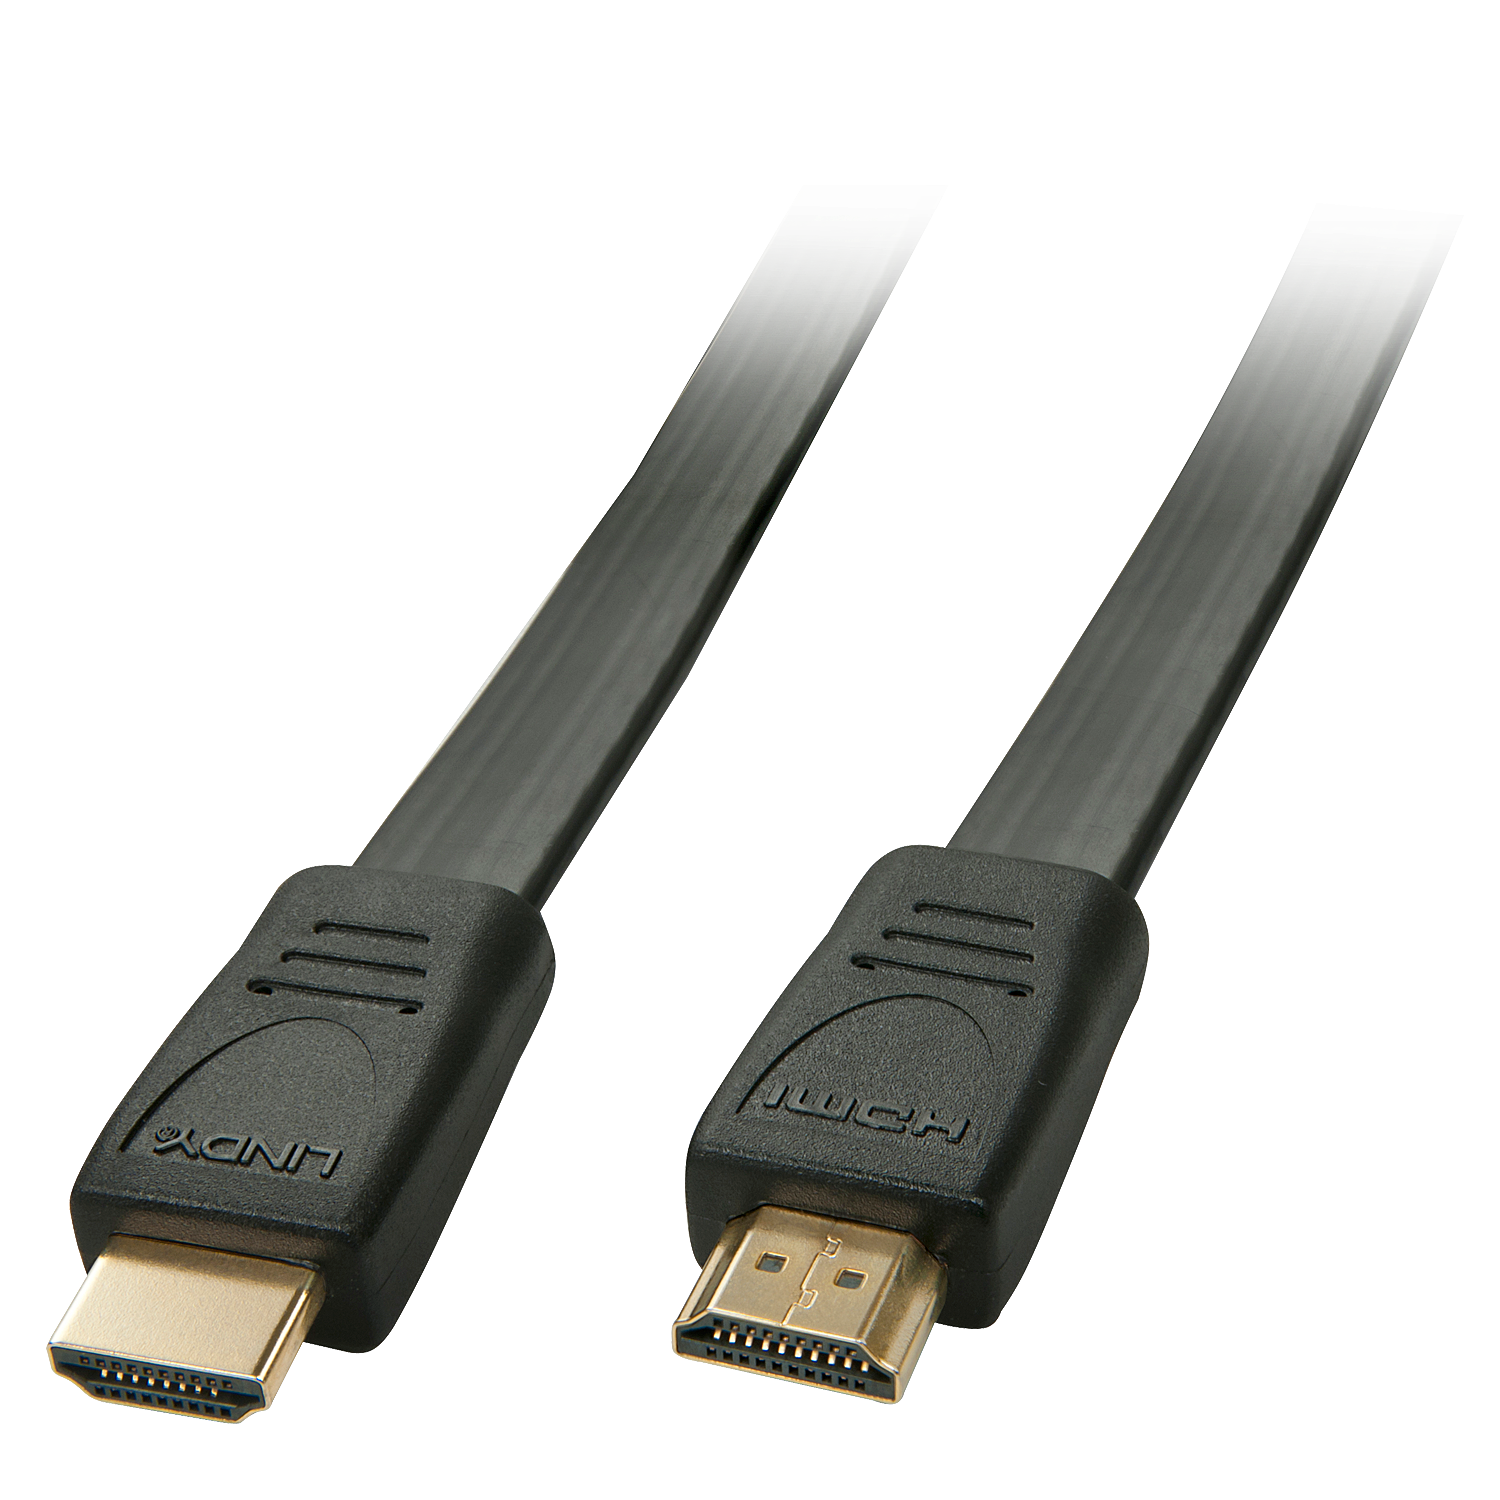 LINDY HDMI High Speed Flachbandkabel 4,5m HDMI 2.0 / HDTV und HDCP kompatibel (36999)